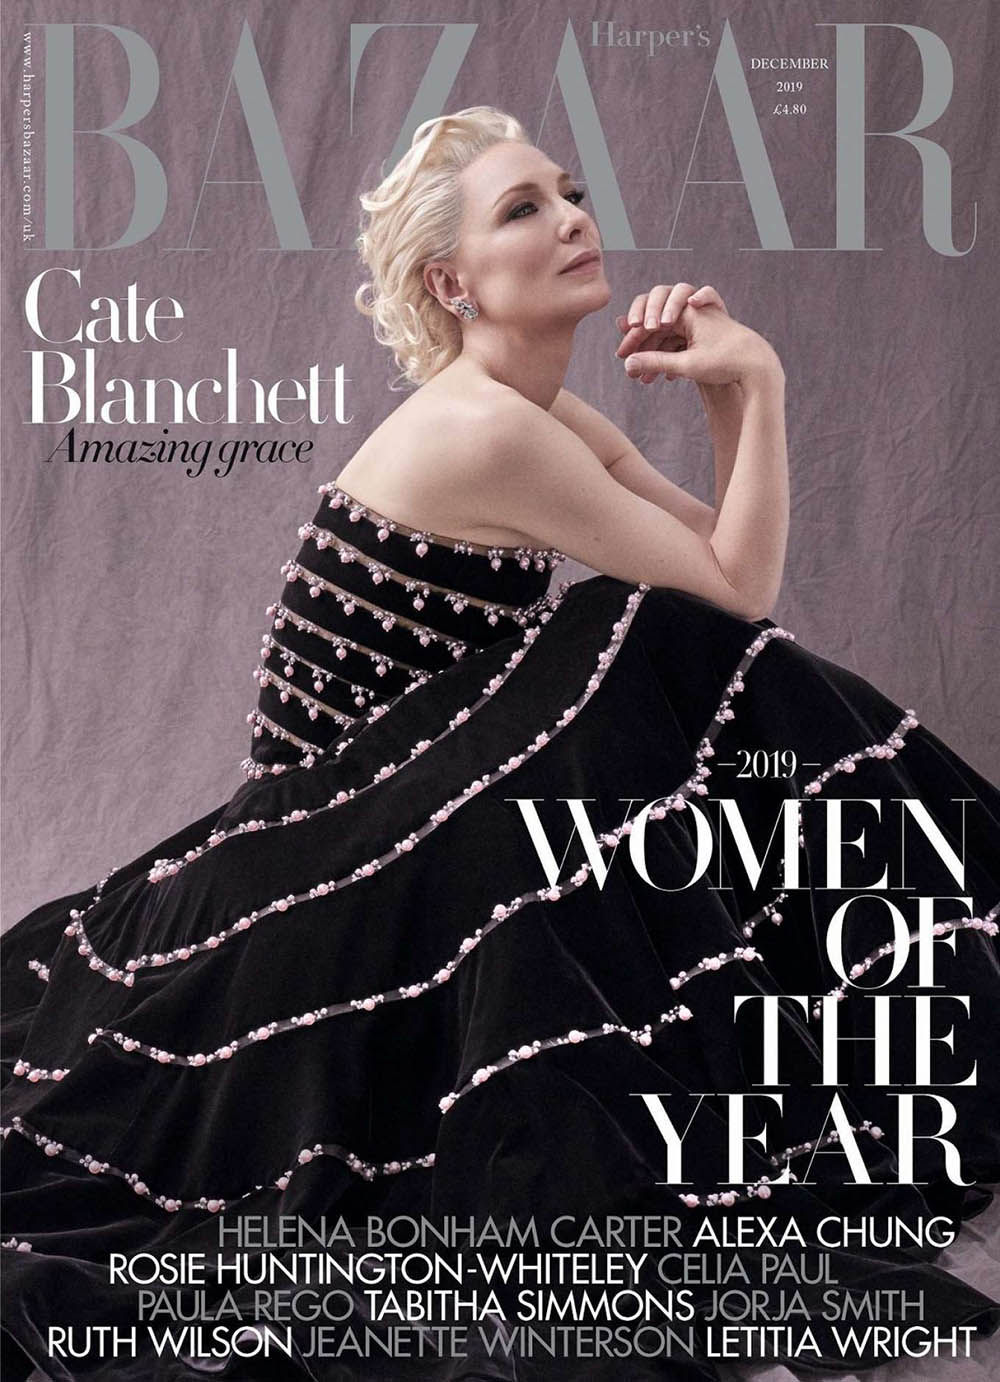 Cate Blanchett covers Harper’s Bazaar UK December 2019 by Tom Munro